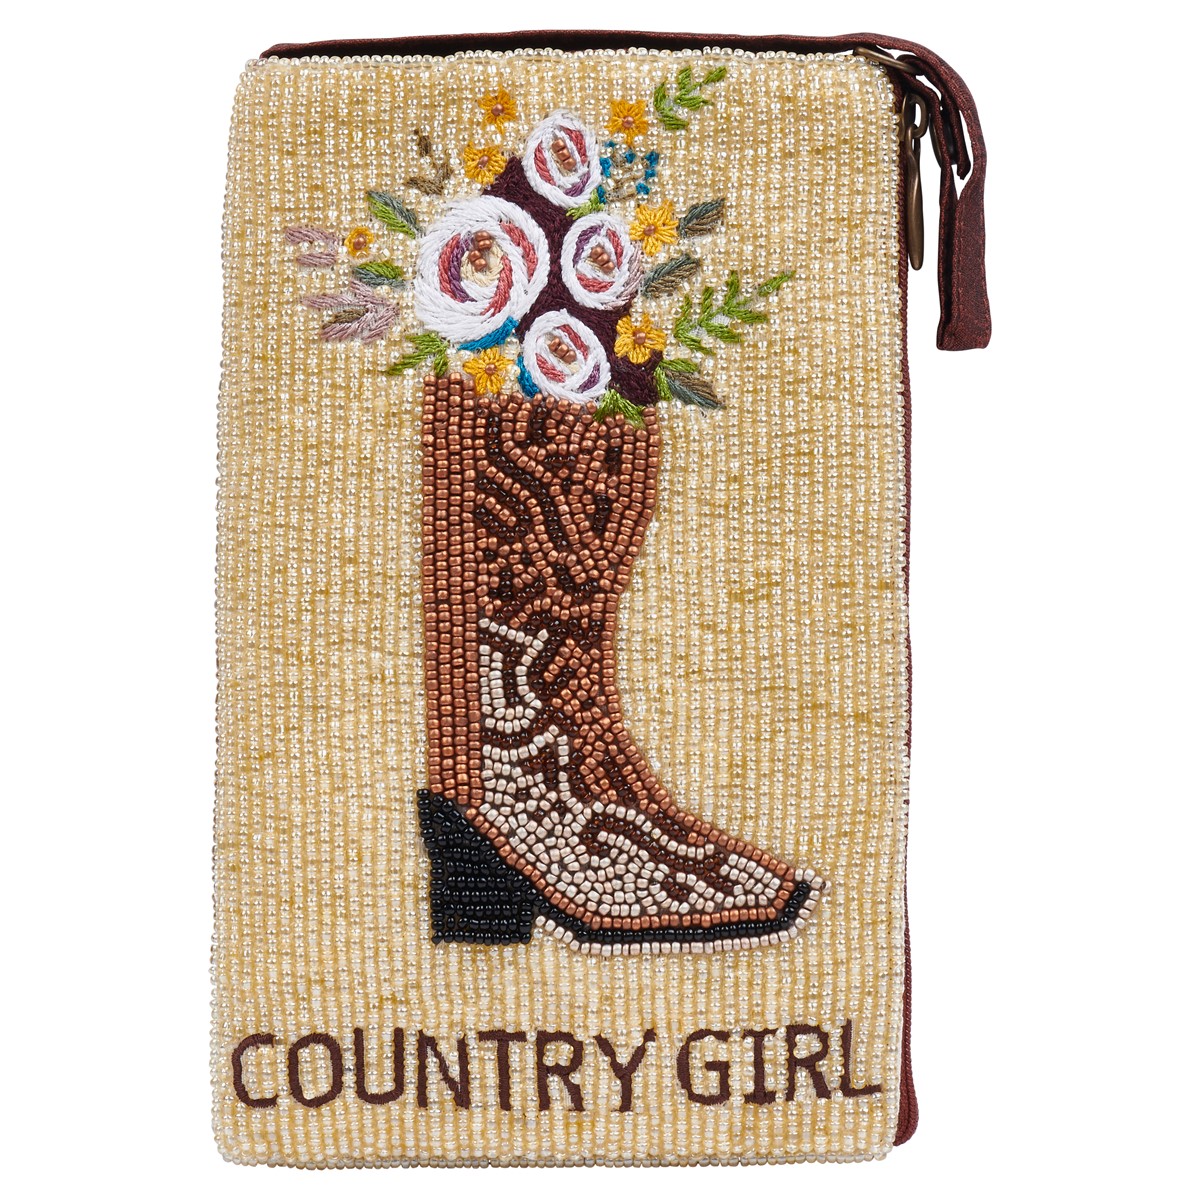 Club Bag Country Girl SHB488